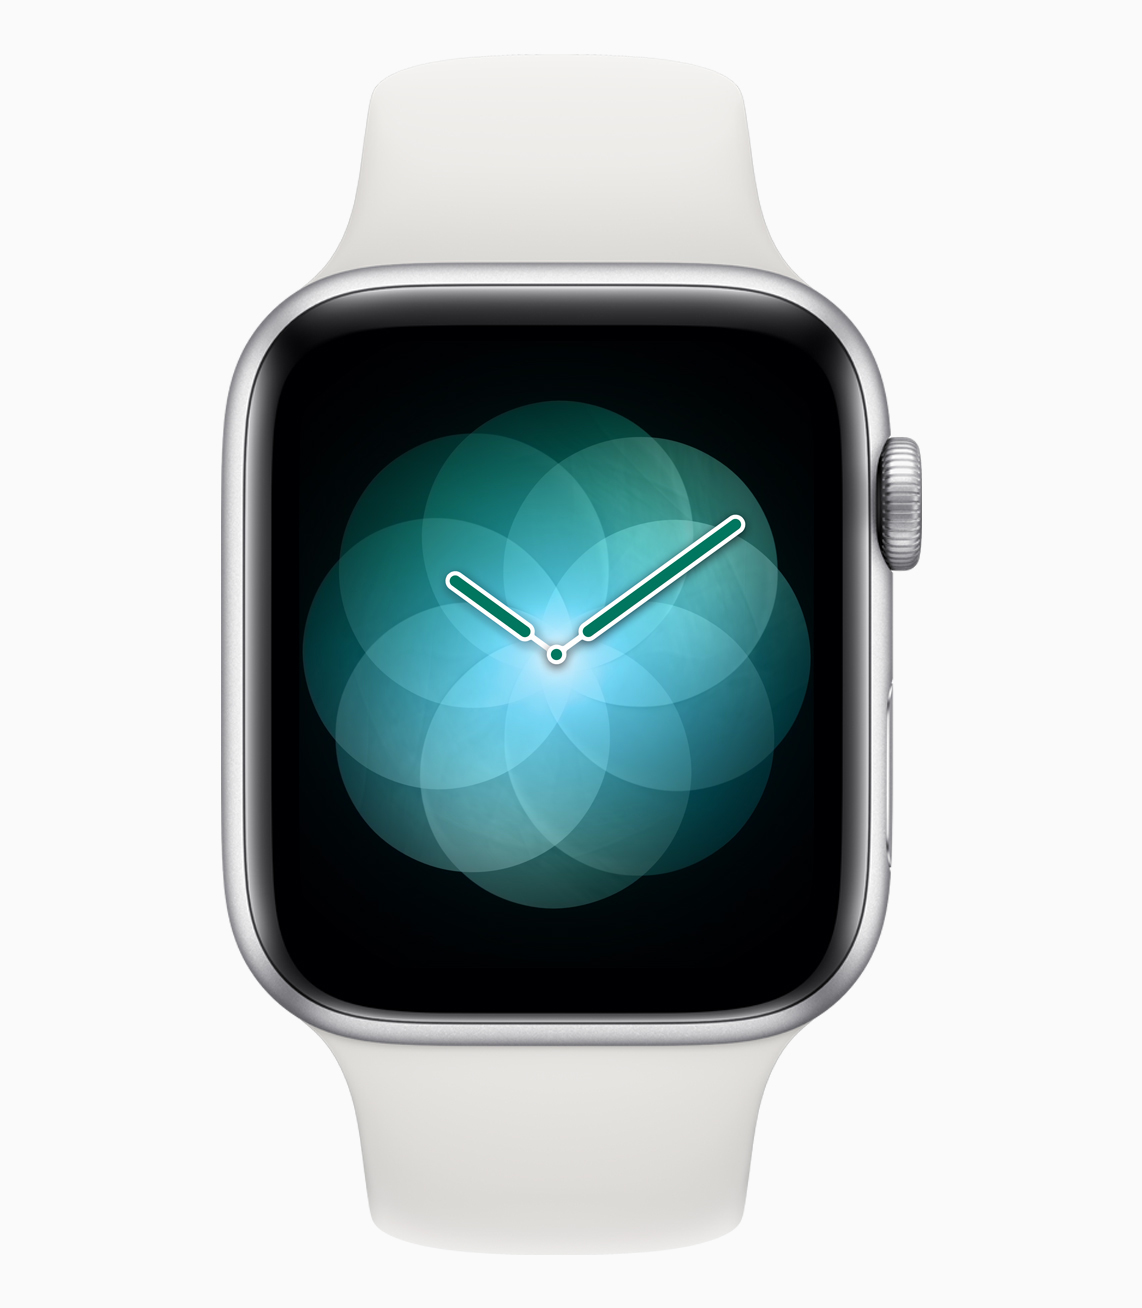 Прозрачные часы на айфон. Смарт часы эпл вотч 4. Айфон Эппл вотч 4. Айфон и часы эпл вотч. Apple watch s4.